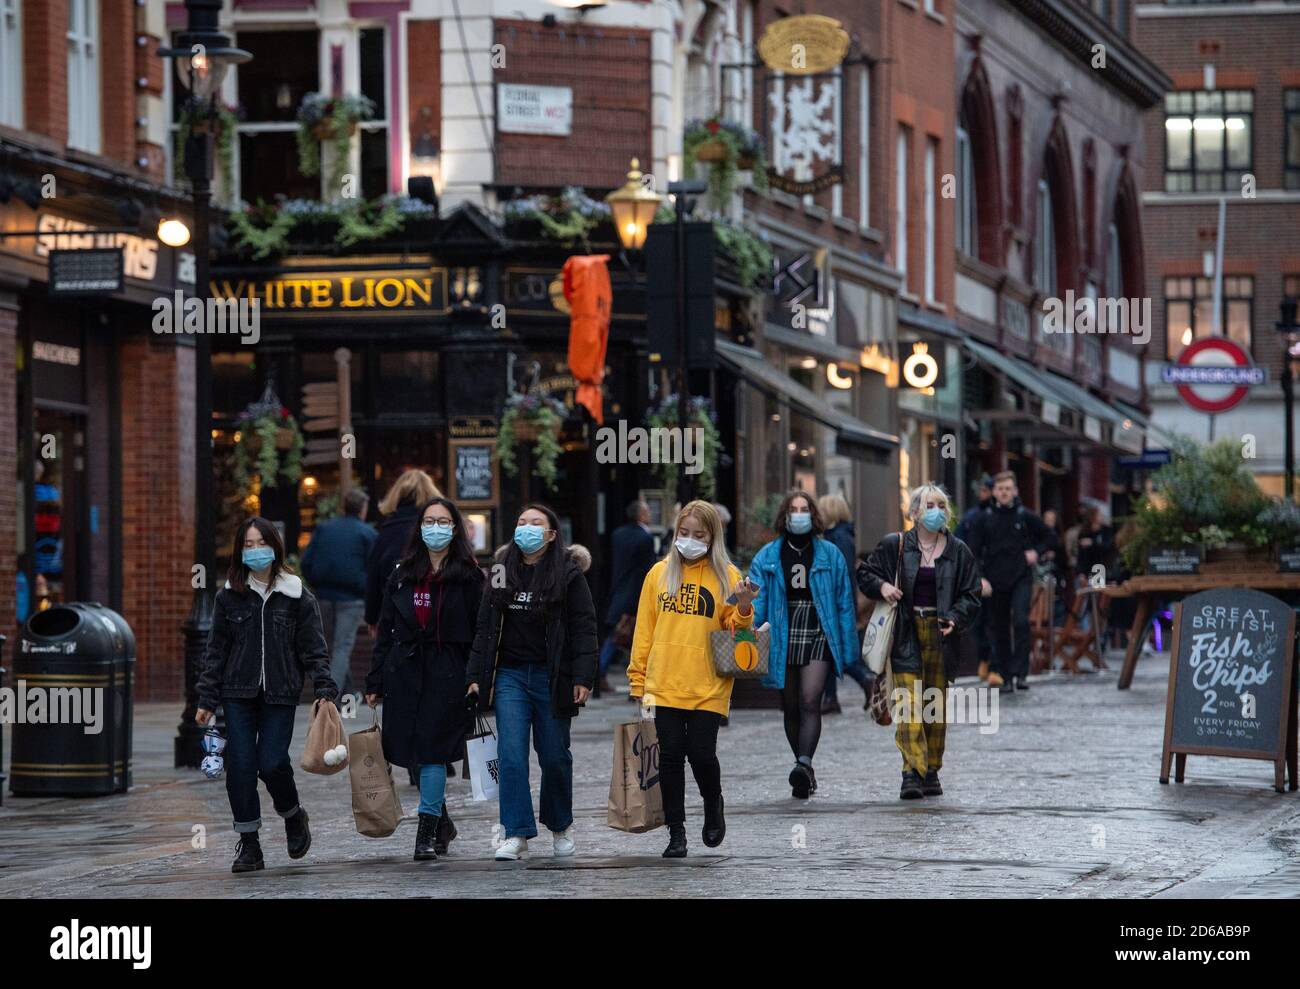 Persone che indossano maschere a Covent Garden, nel centro di Londra, dopo che il sindaco di Londra Sadiq Khan ha annunciato che Londra sarà trasferito alle restrizioni Tier 2 del coronavirus a partire dalla mezzanotte del venerdì. Foto Stock